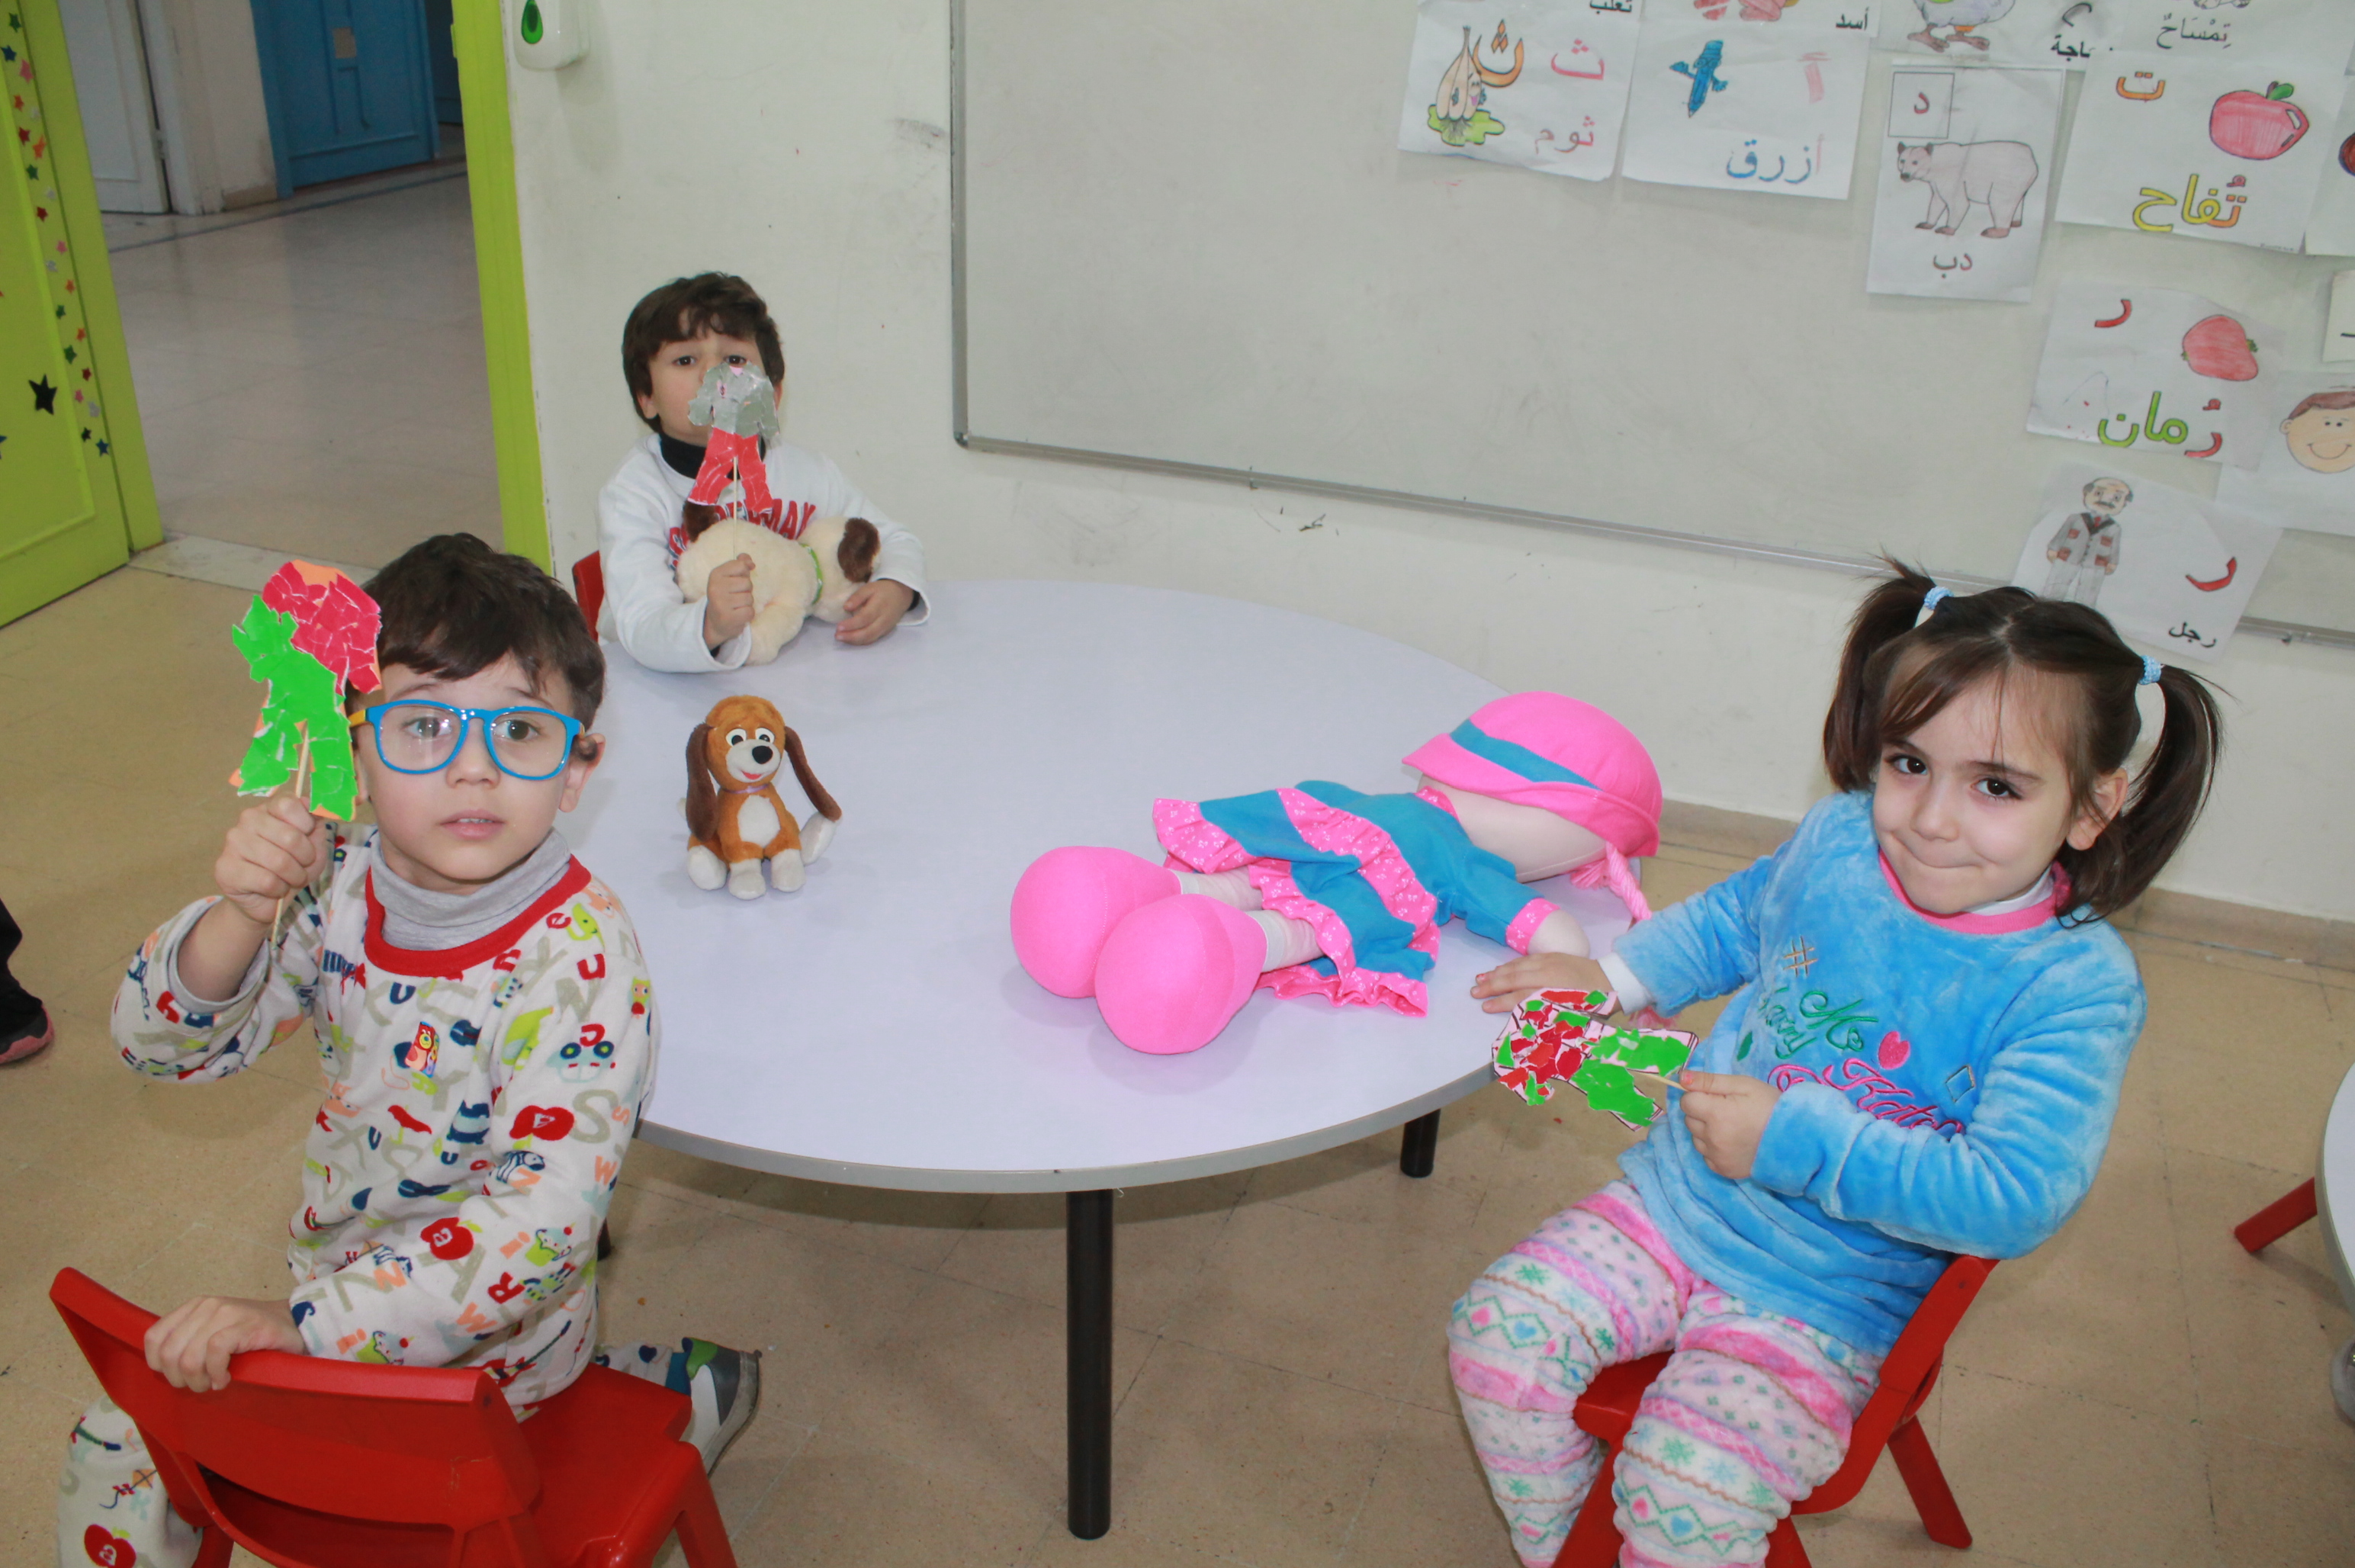 Pyjama Day, Kindergarten Section.